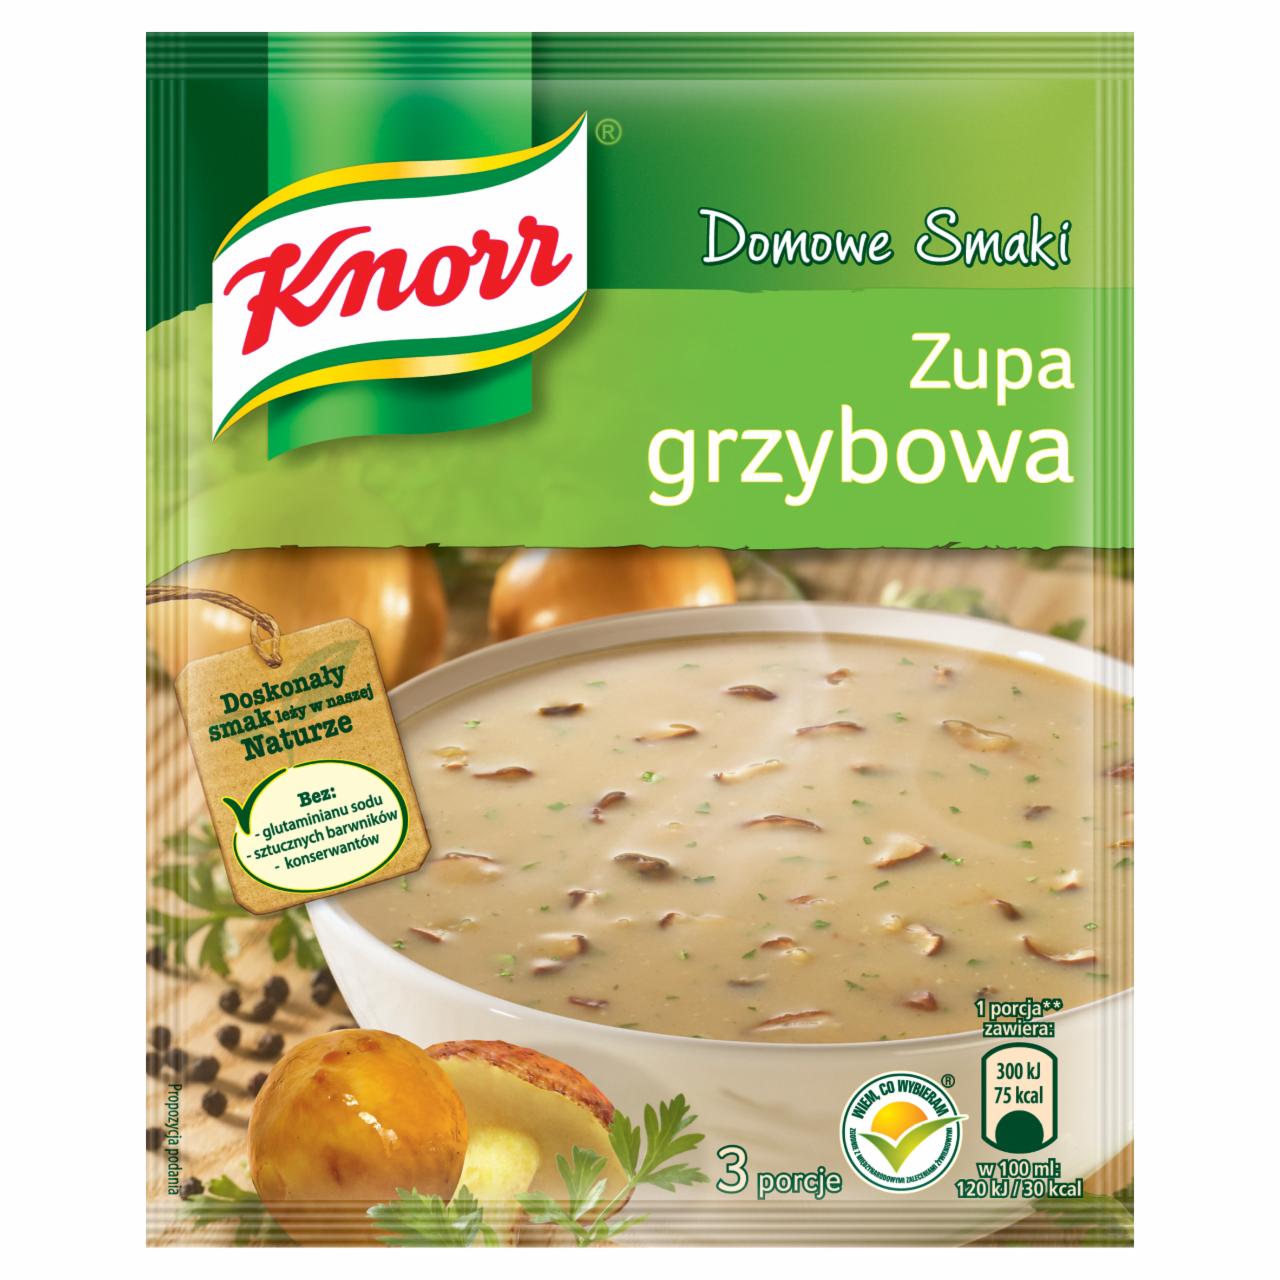 Zdjęcia - Knorr Domowe Smaki Zupa grzybowa 50 g